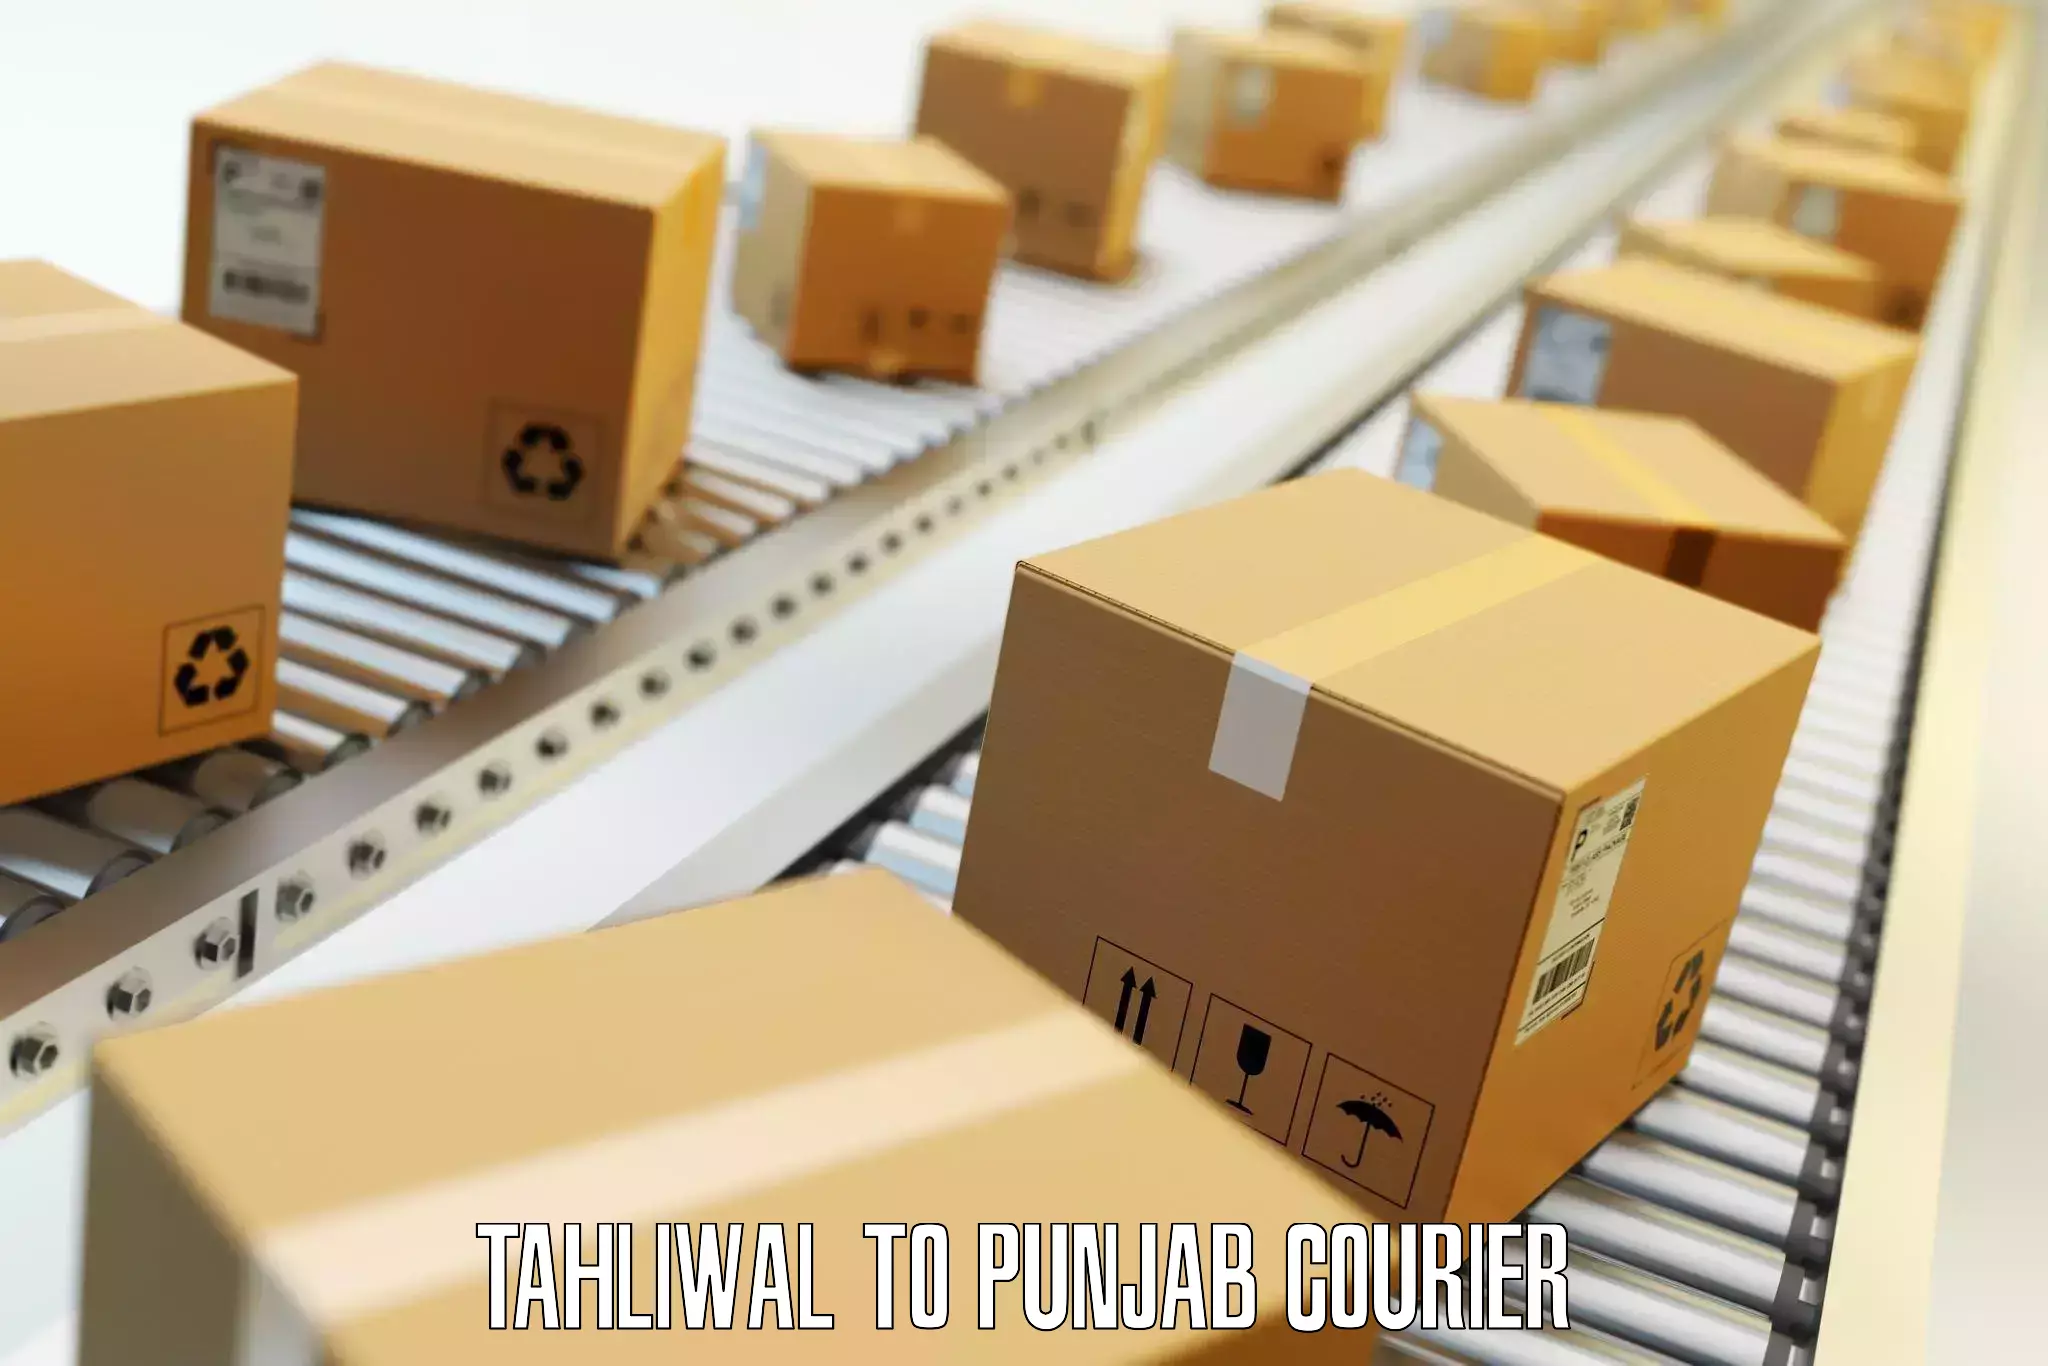 Luggage transit service Tahliwal to Punjab